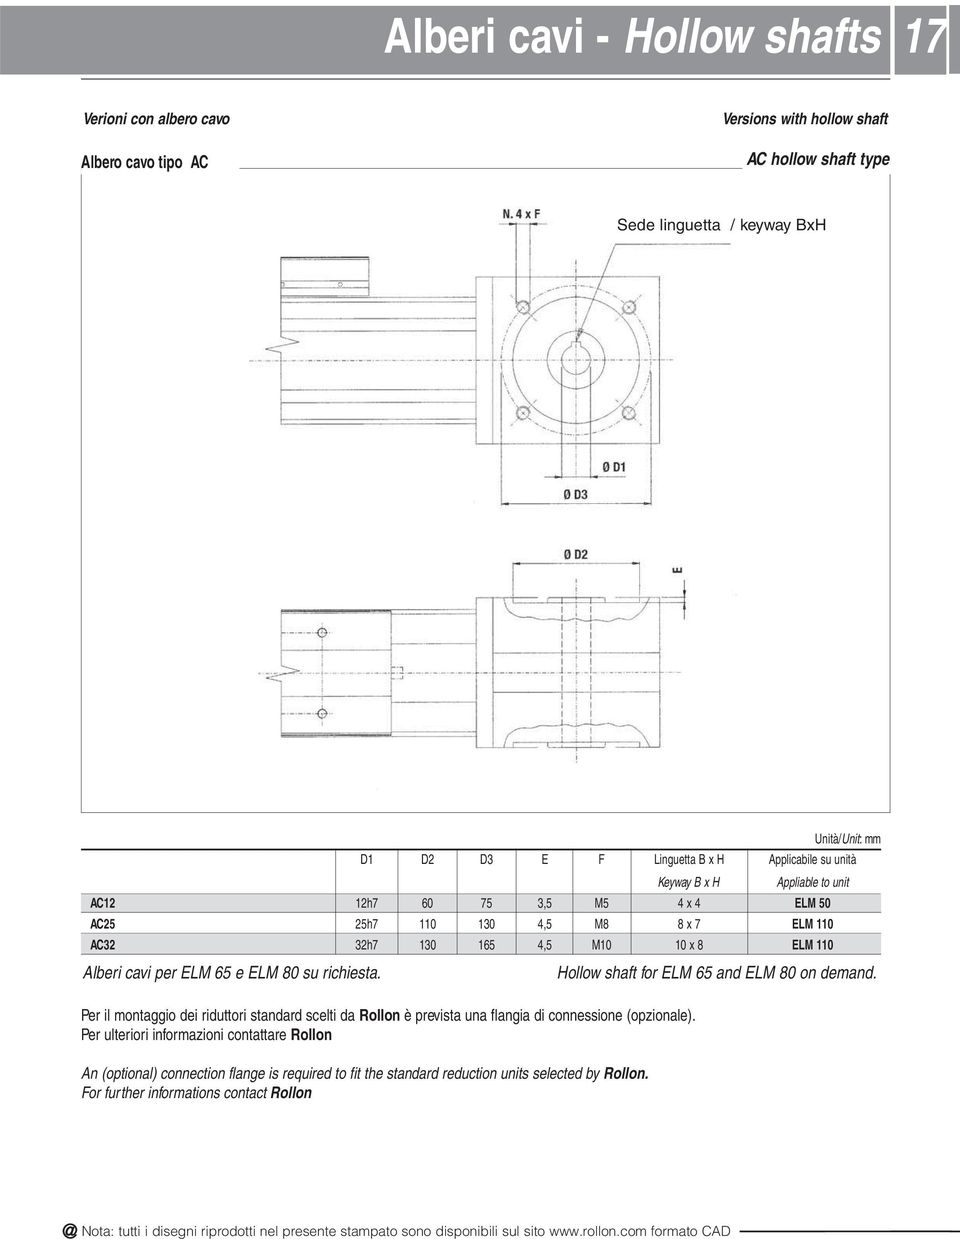 x 8 ELM 110 Per il montaggio dei riduttori standard scelti da Rollon è prevista una flangia di connessione (opzionale).